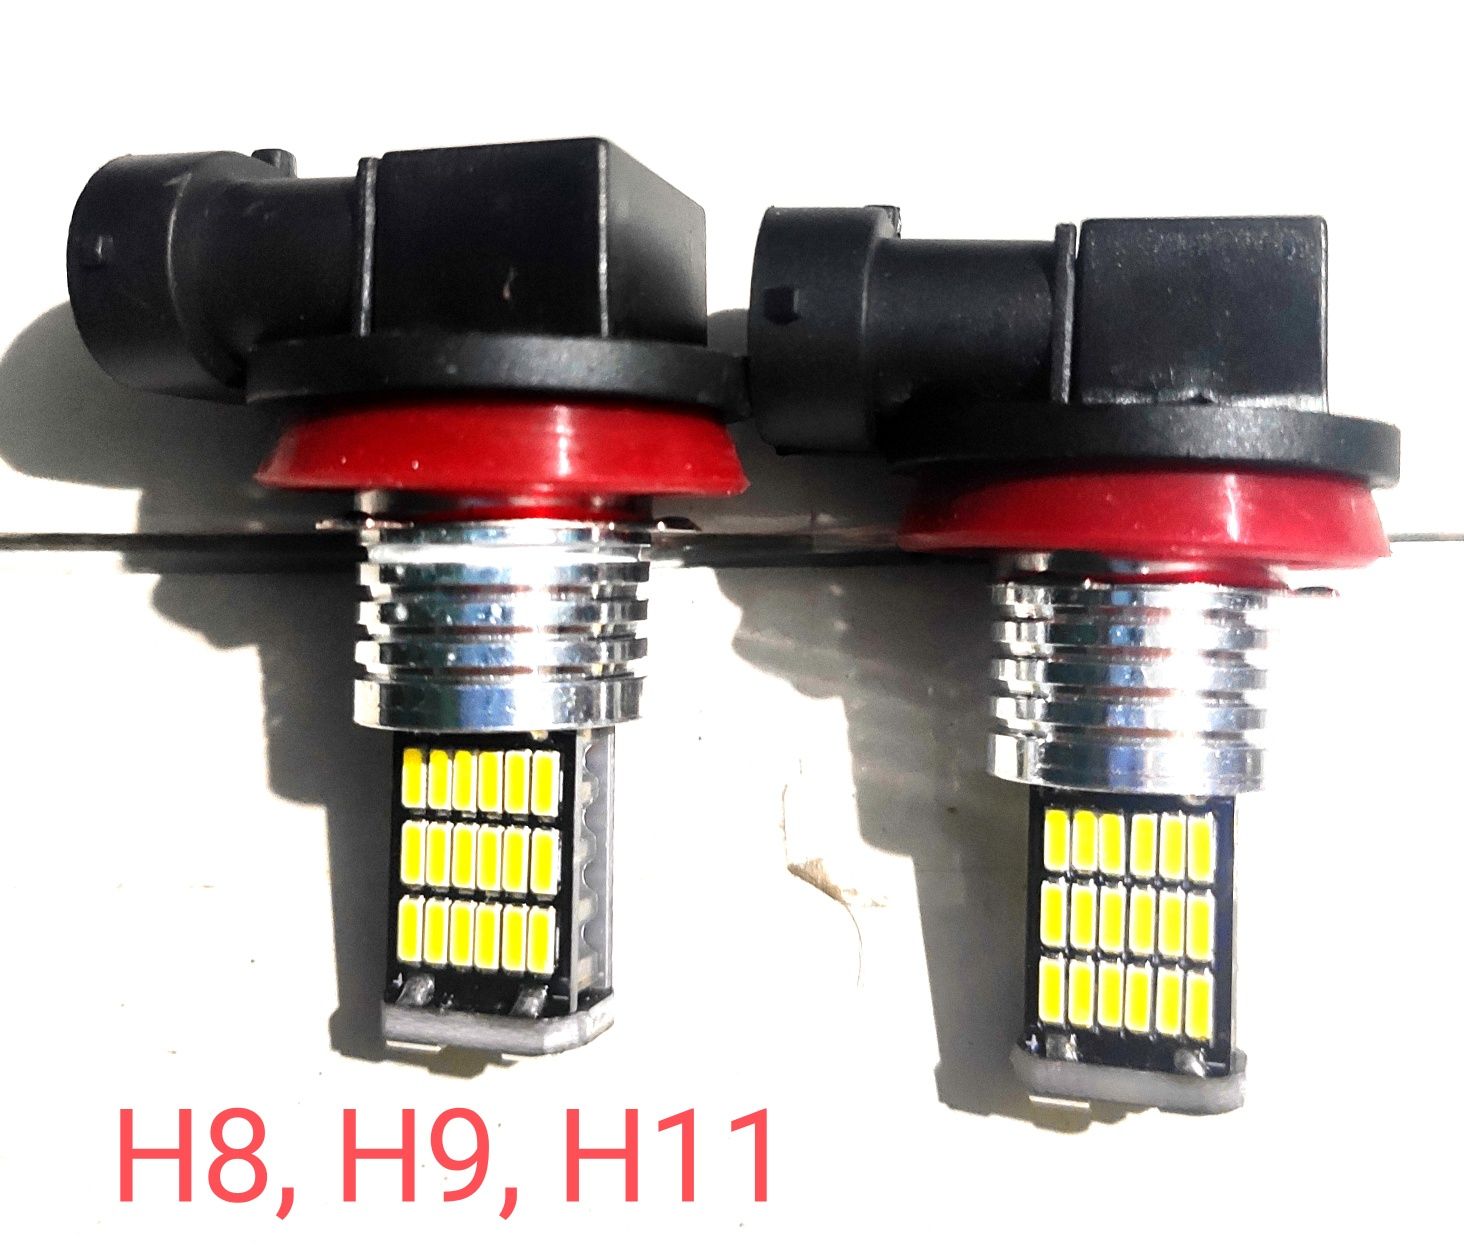 Лед лампи різних видів LED H4, H7, H8, H10, H11, 9005, 9006, H1, H27